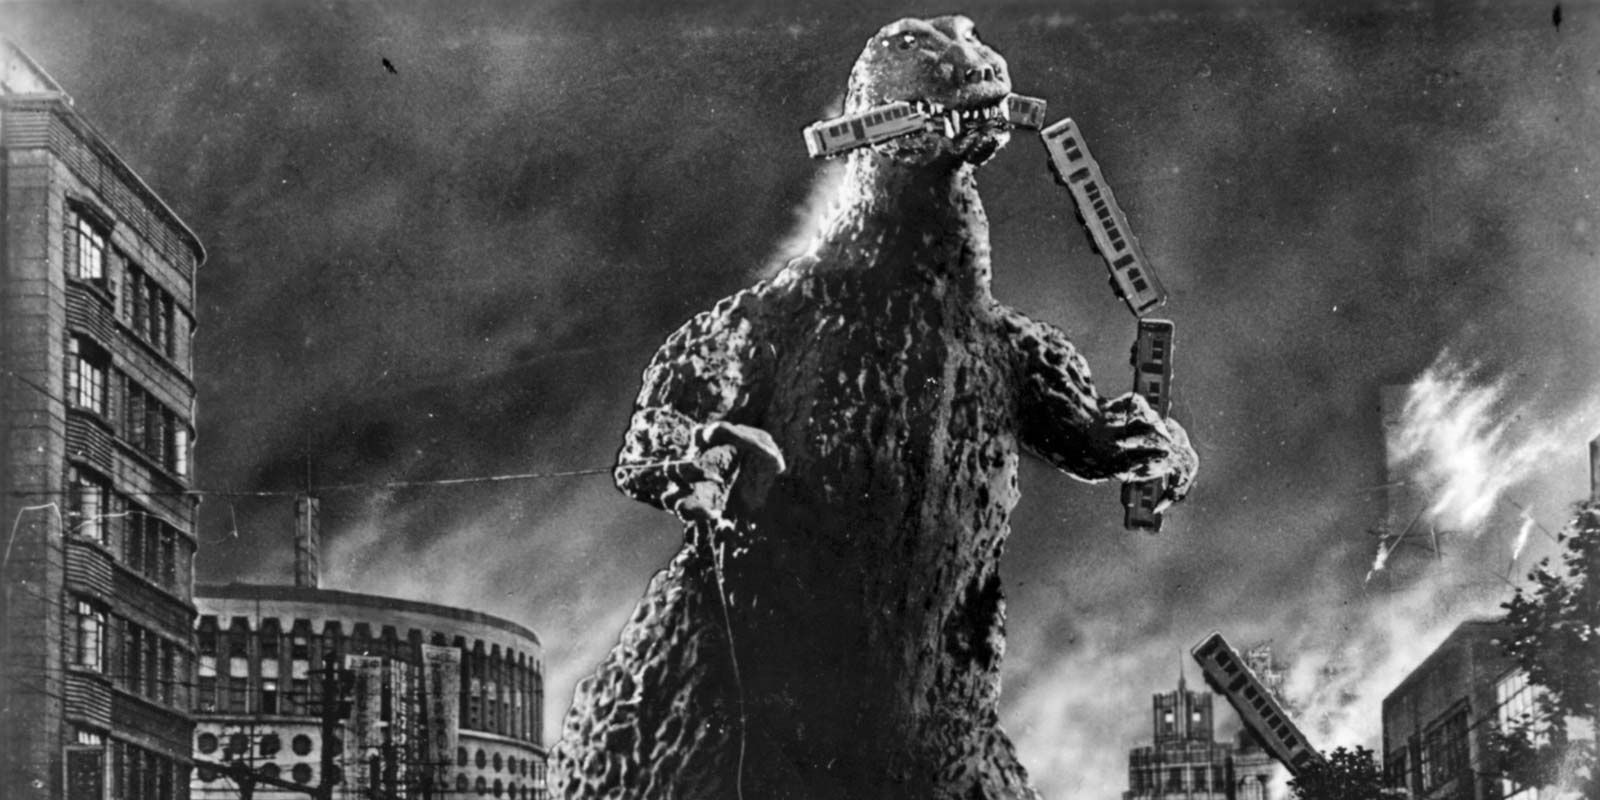 Godzilla munching on a train.